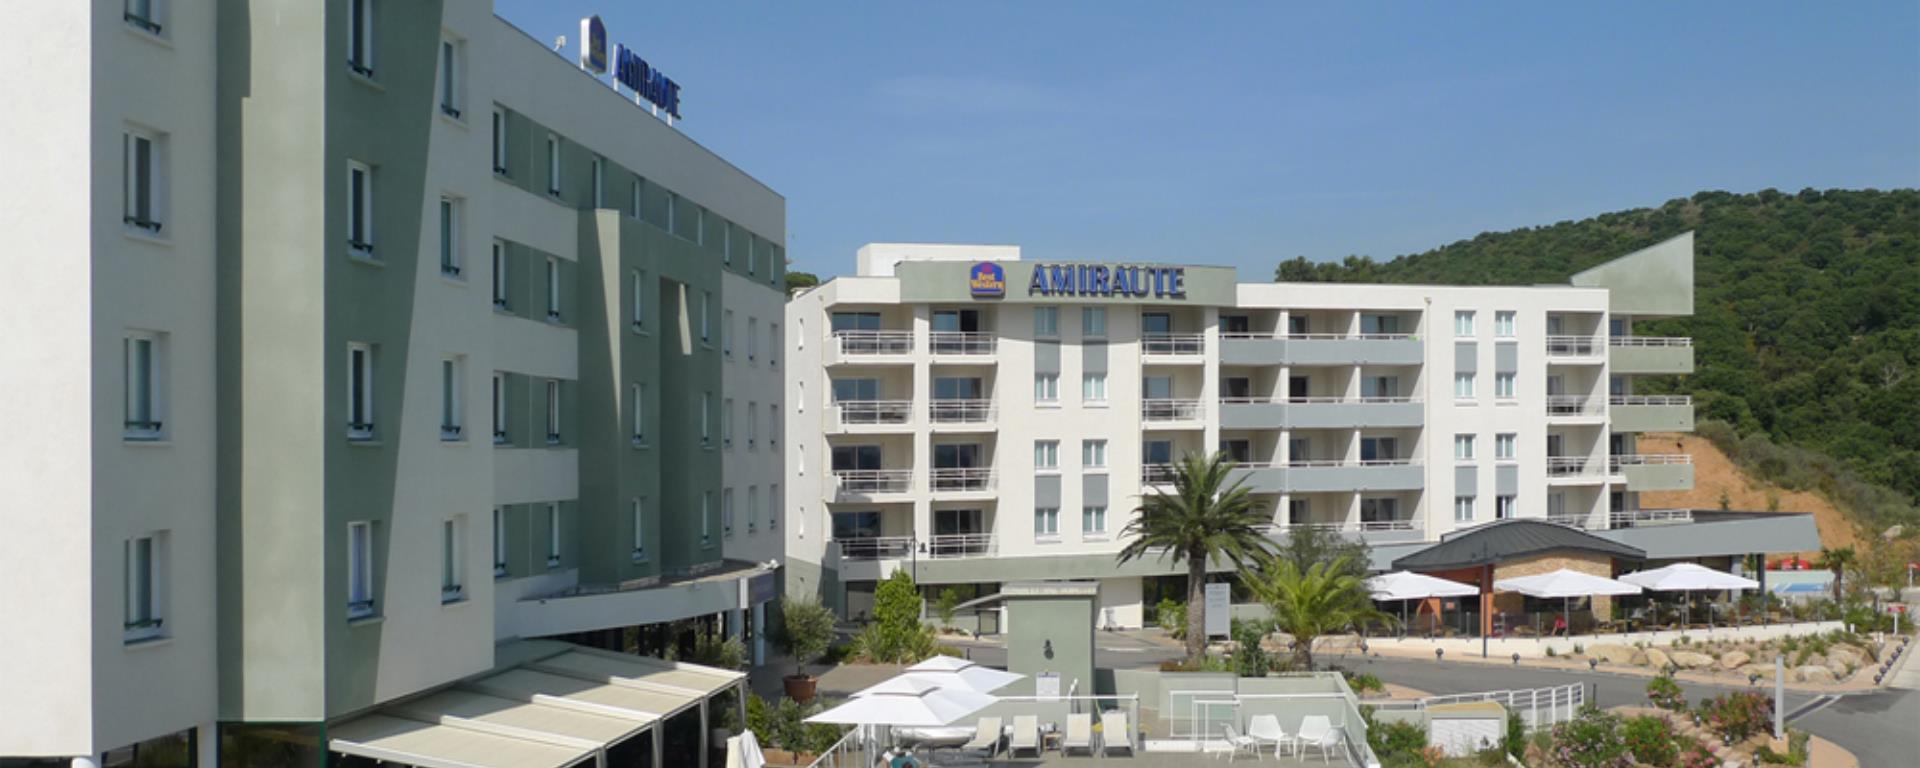 2013 - Best Western Amirauté - façade hôtel best western amirauté